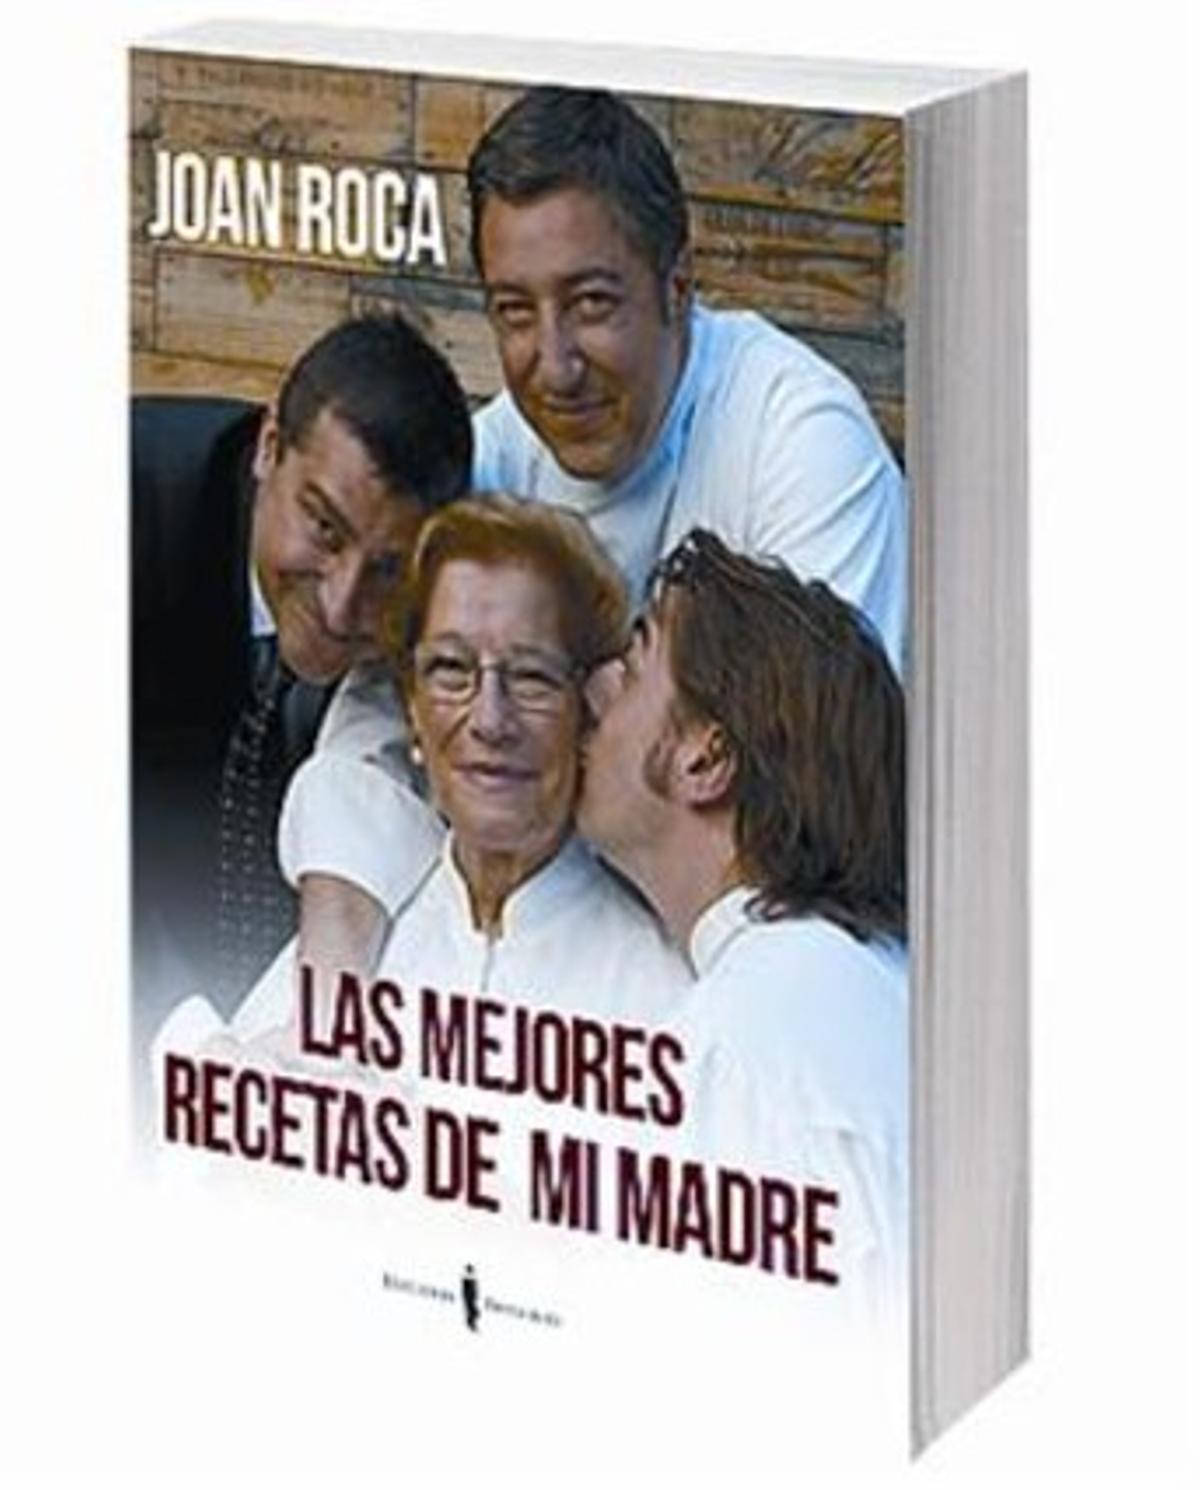 El chef Joan Roca rinde homenaje a sus raíces